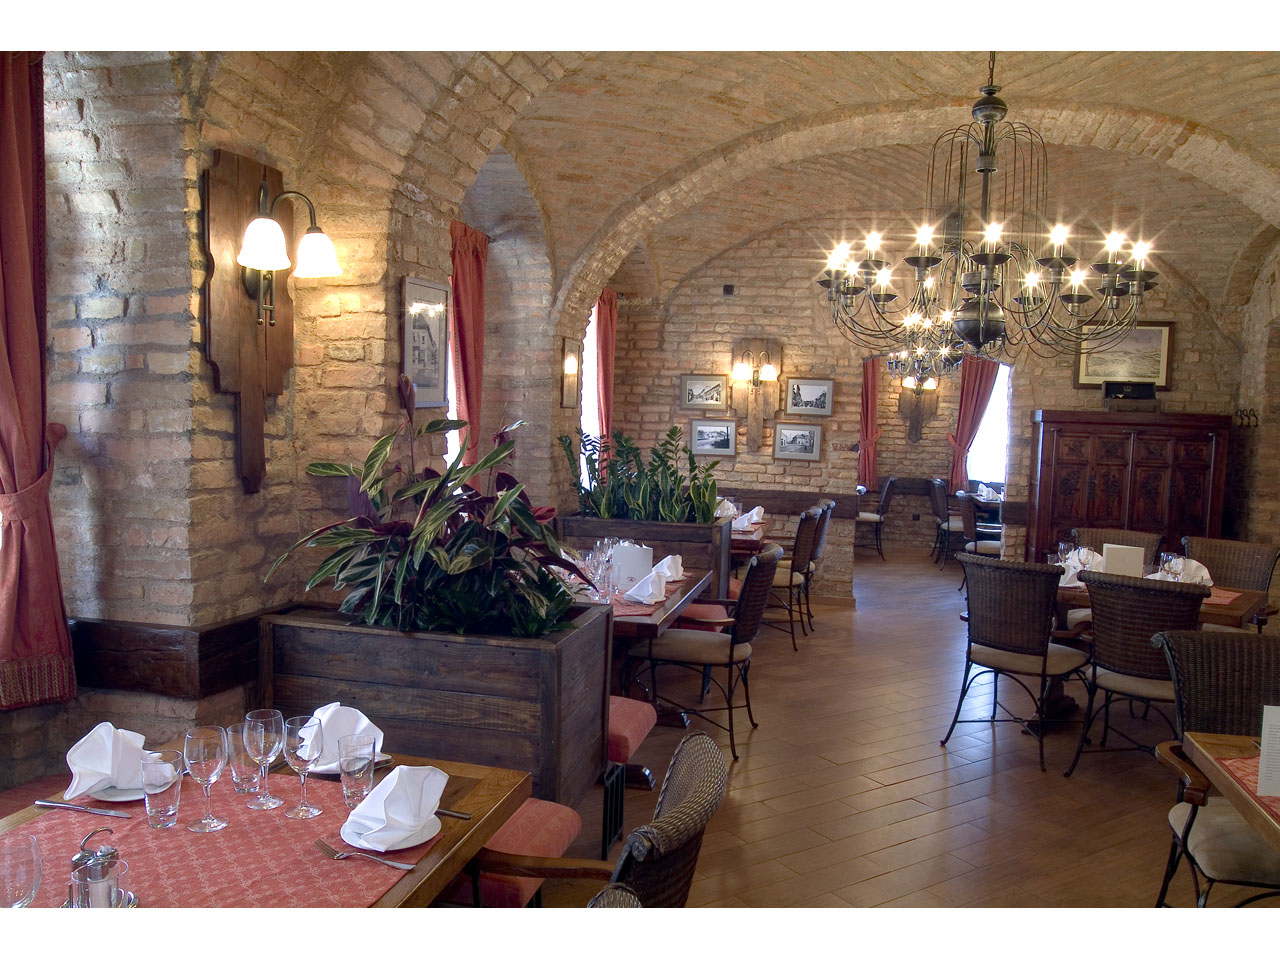 Slika 1 - STARA CARINARNICA Restorani Beograd